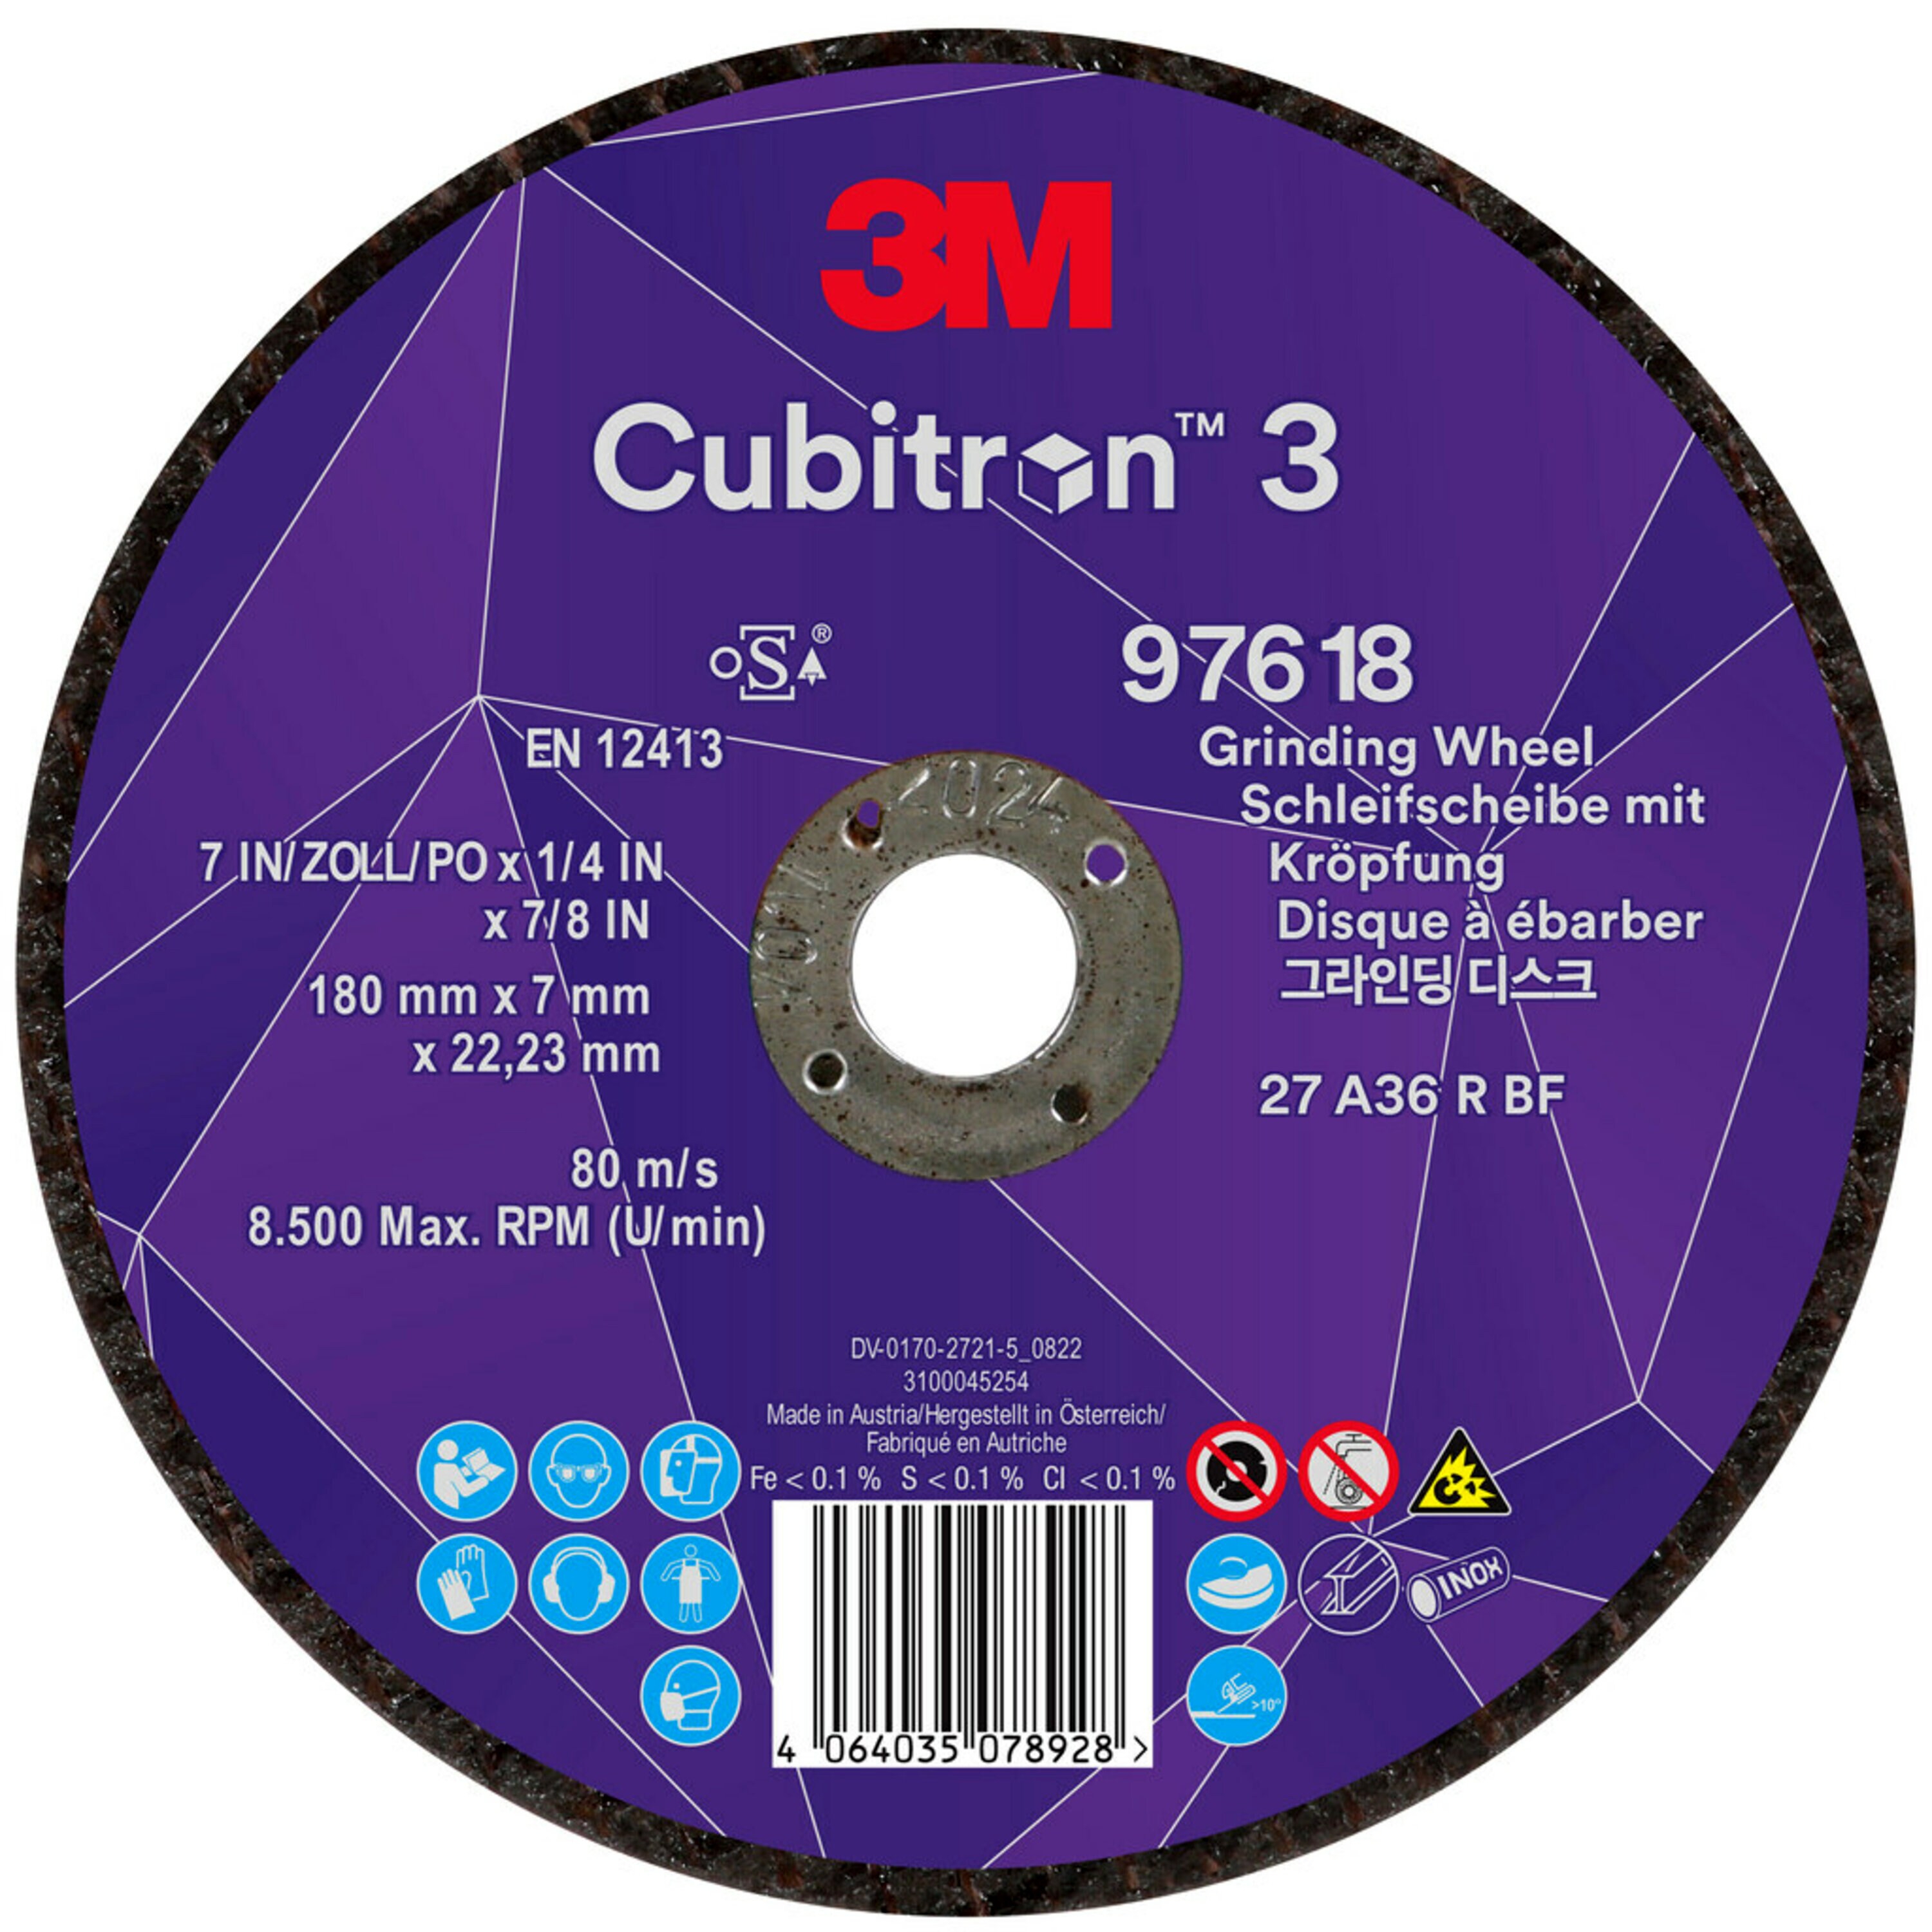 3M Cubitron 3 slijpschijf, 180 mm, 7,0 mm, 22,23 mm, 36+, type 27, speciaal voor gutsen # 97618